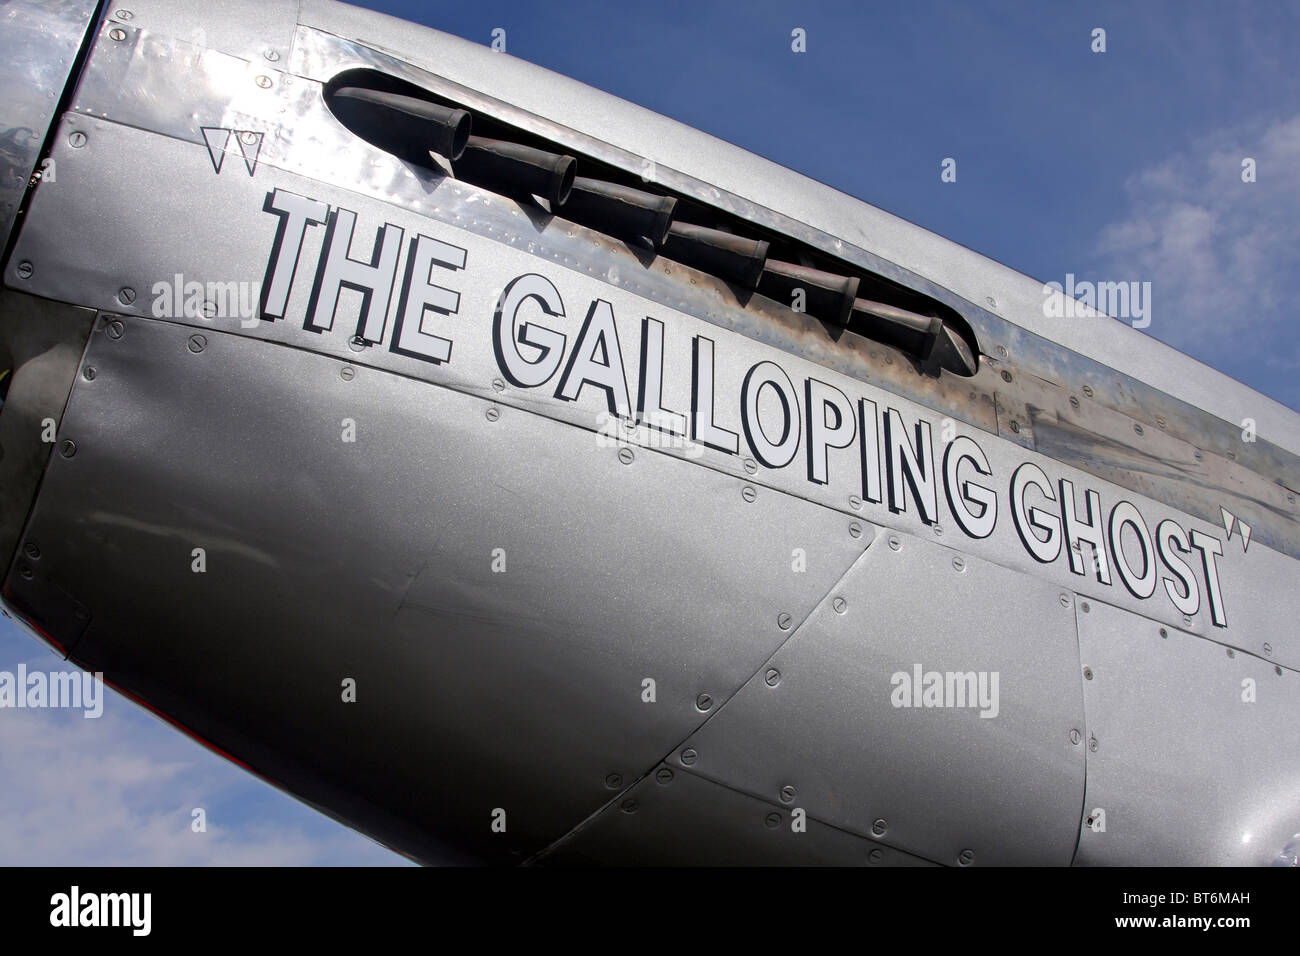 Unbegrenzte Air Racer Galloping Ghost. Das Flugzeug ist im Besitz und von Jimmy Leeward Ocala, Florida geflogen. Stockfoto